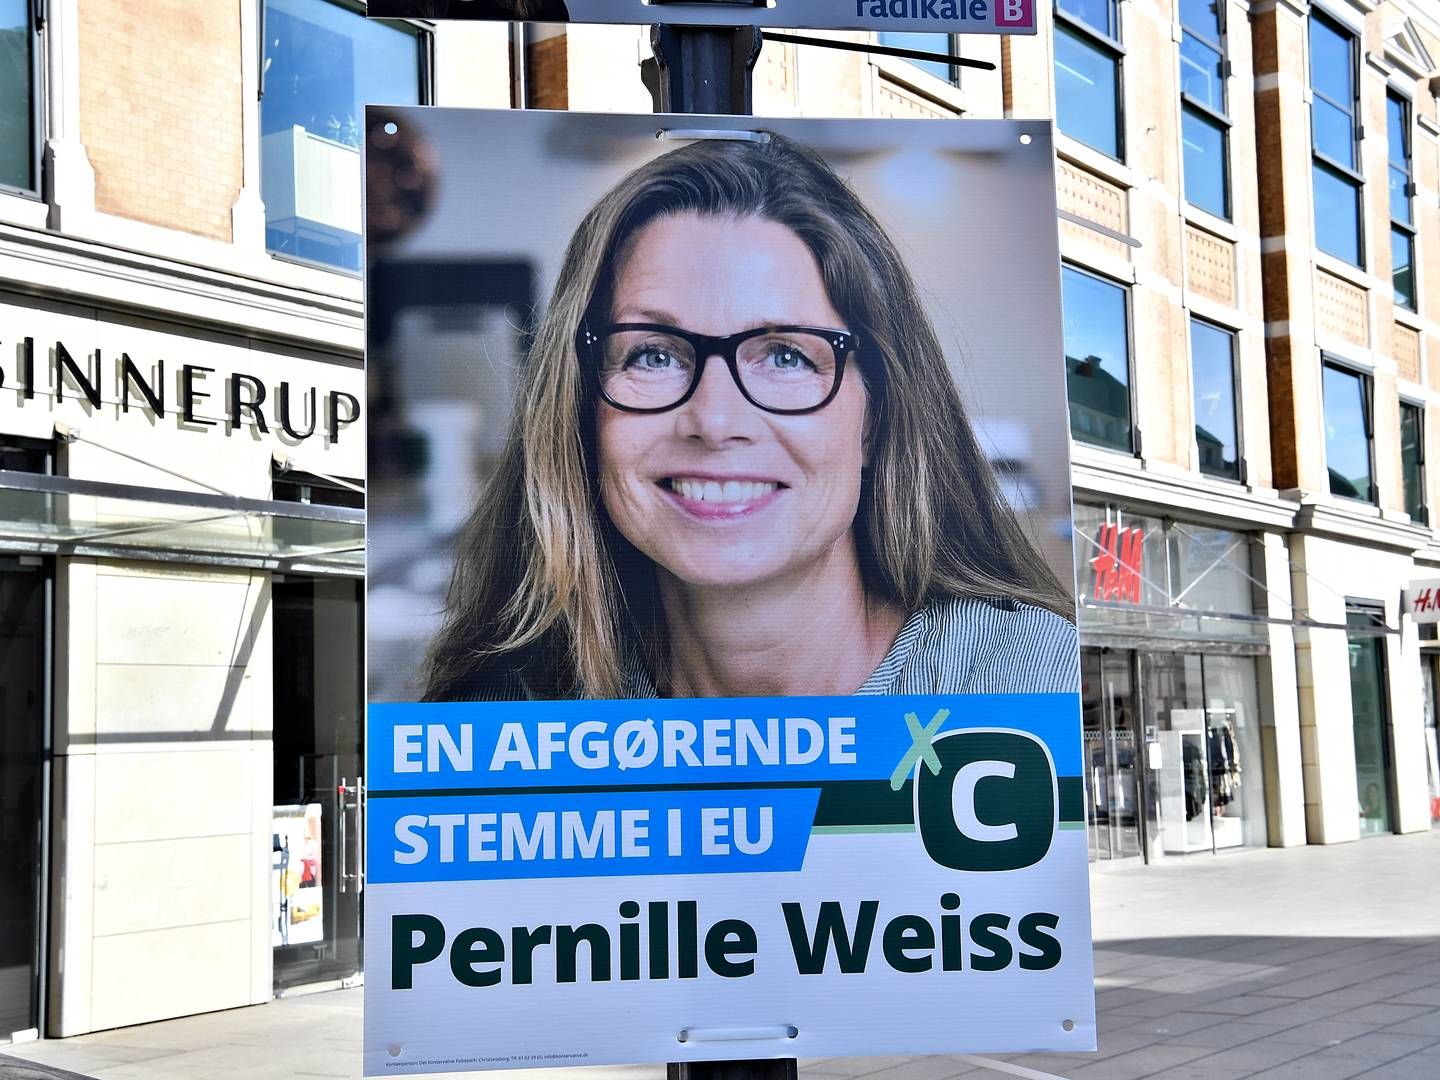 FV19 Valgplakater. Pernille Weiss (K) Konservative. | Foto: Ernst van Norde